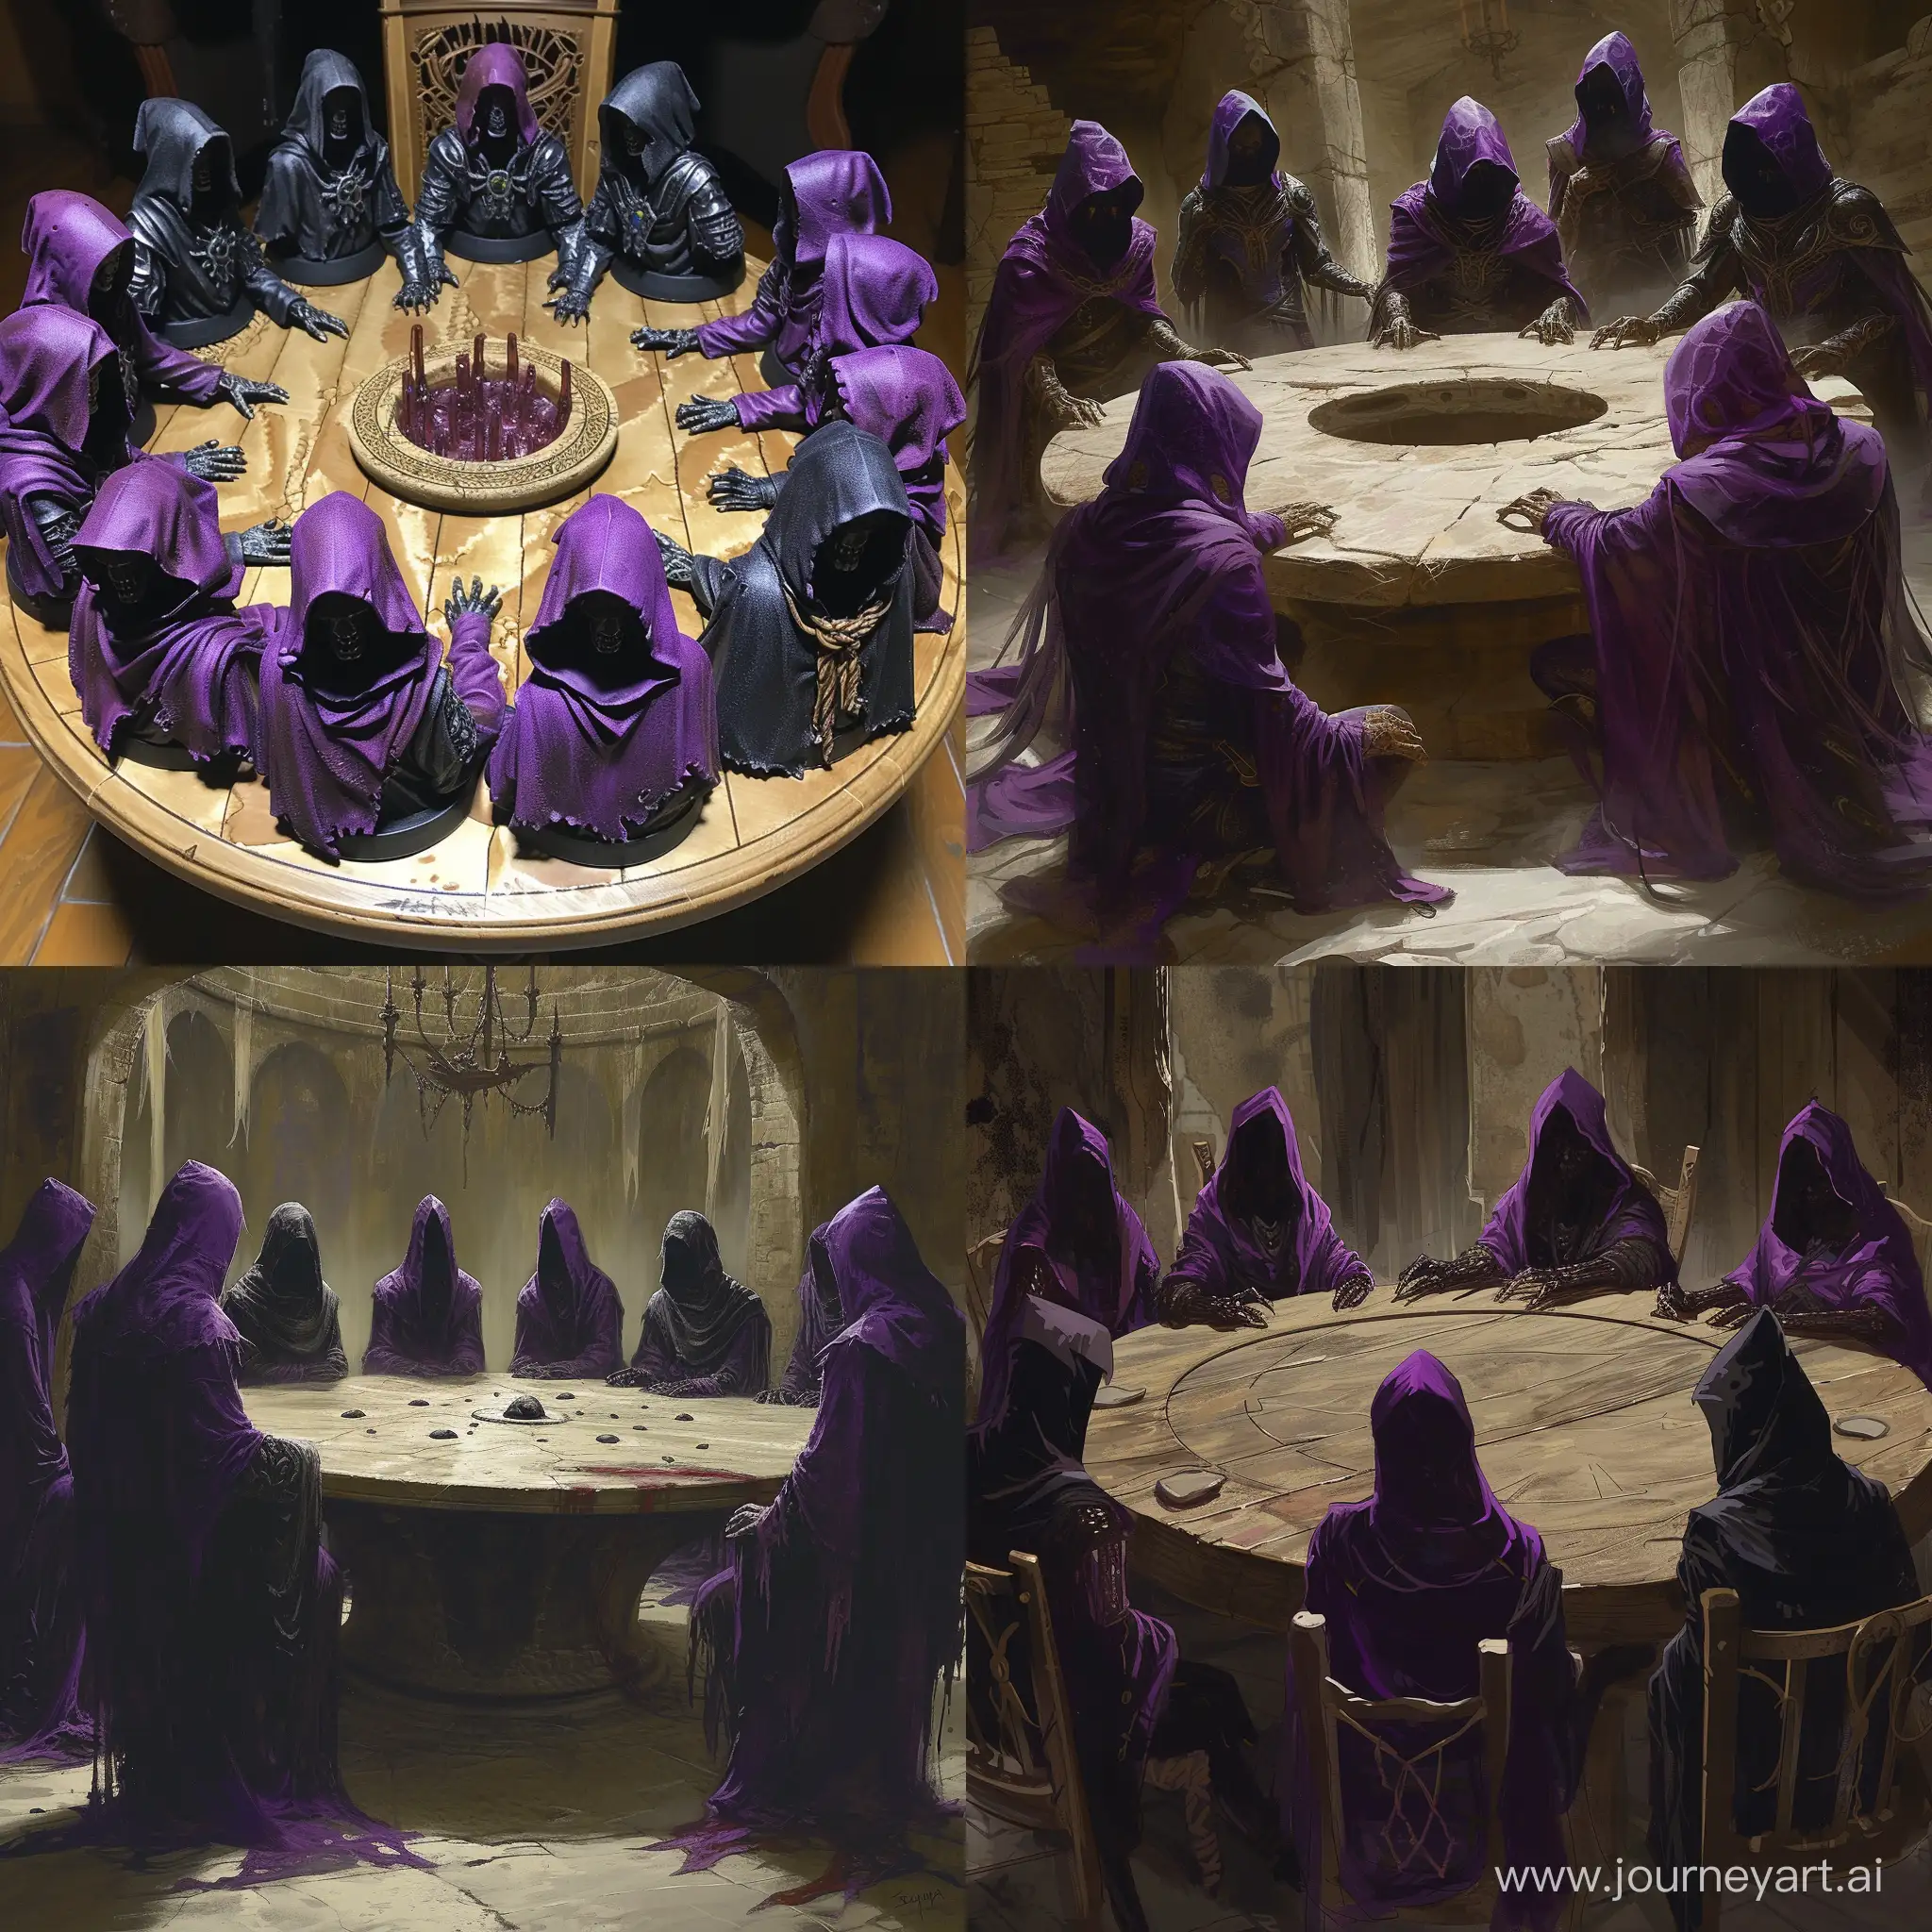 Круглый стол а которым сидят некроманты в фиолетово-чёрных капюшонах.